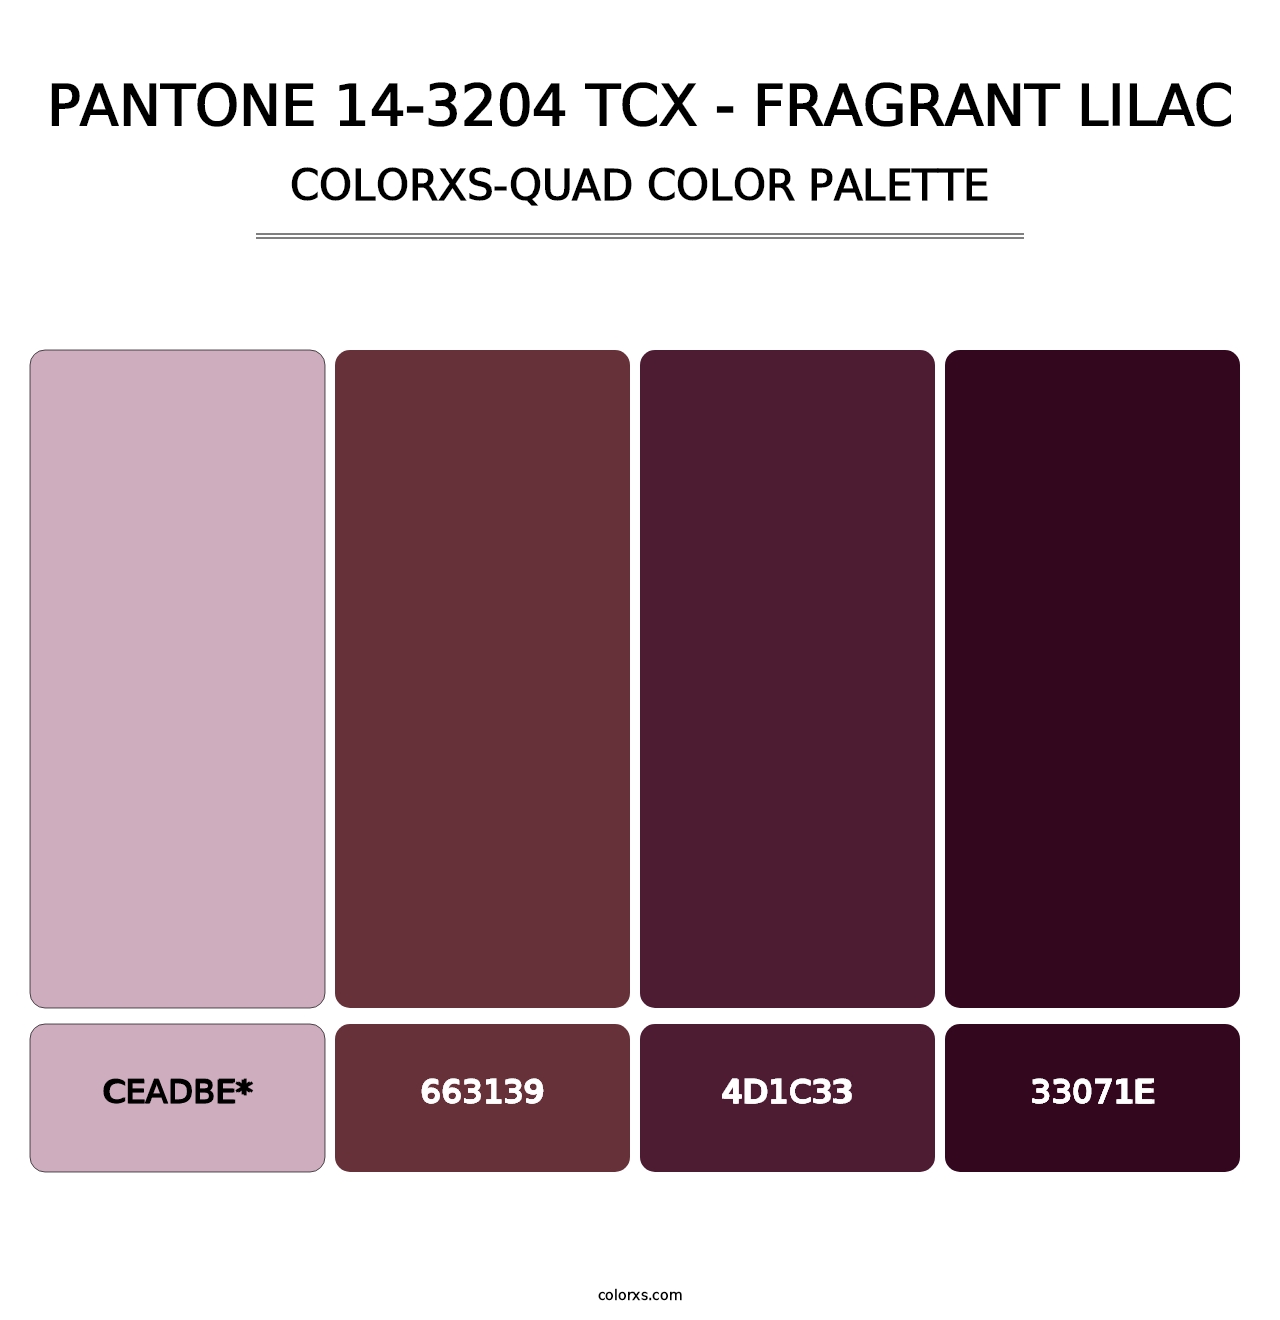 PANTONE 14-3204 TCX - Fragrant Lilac - Colorxs Quad Palette